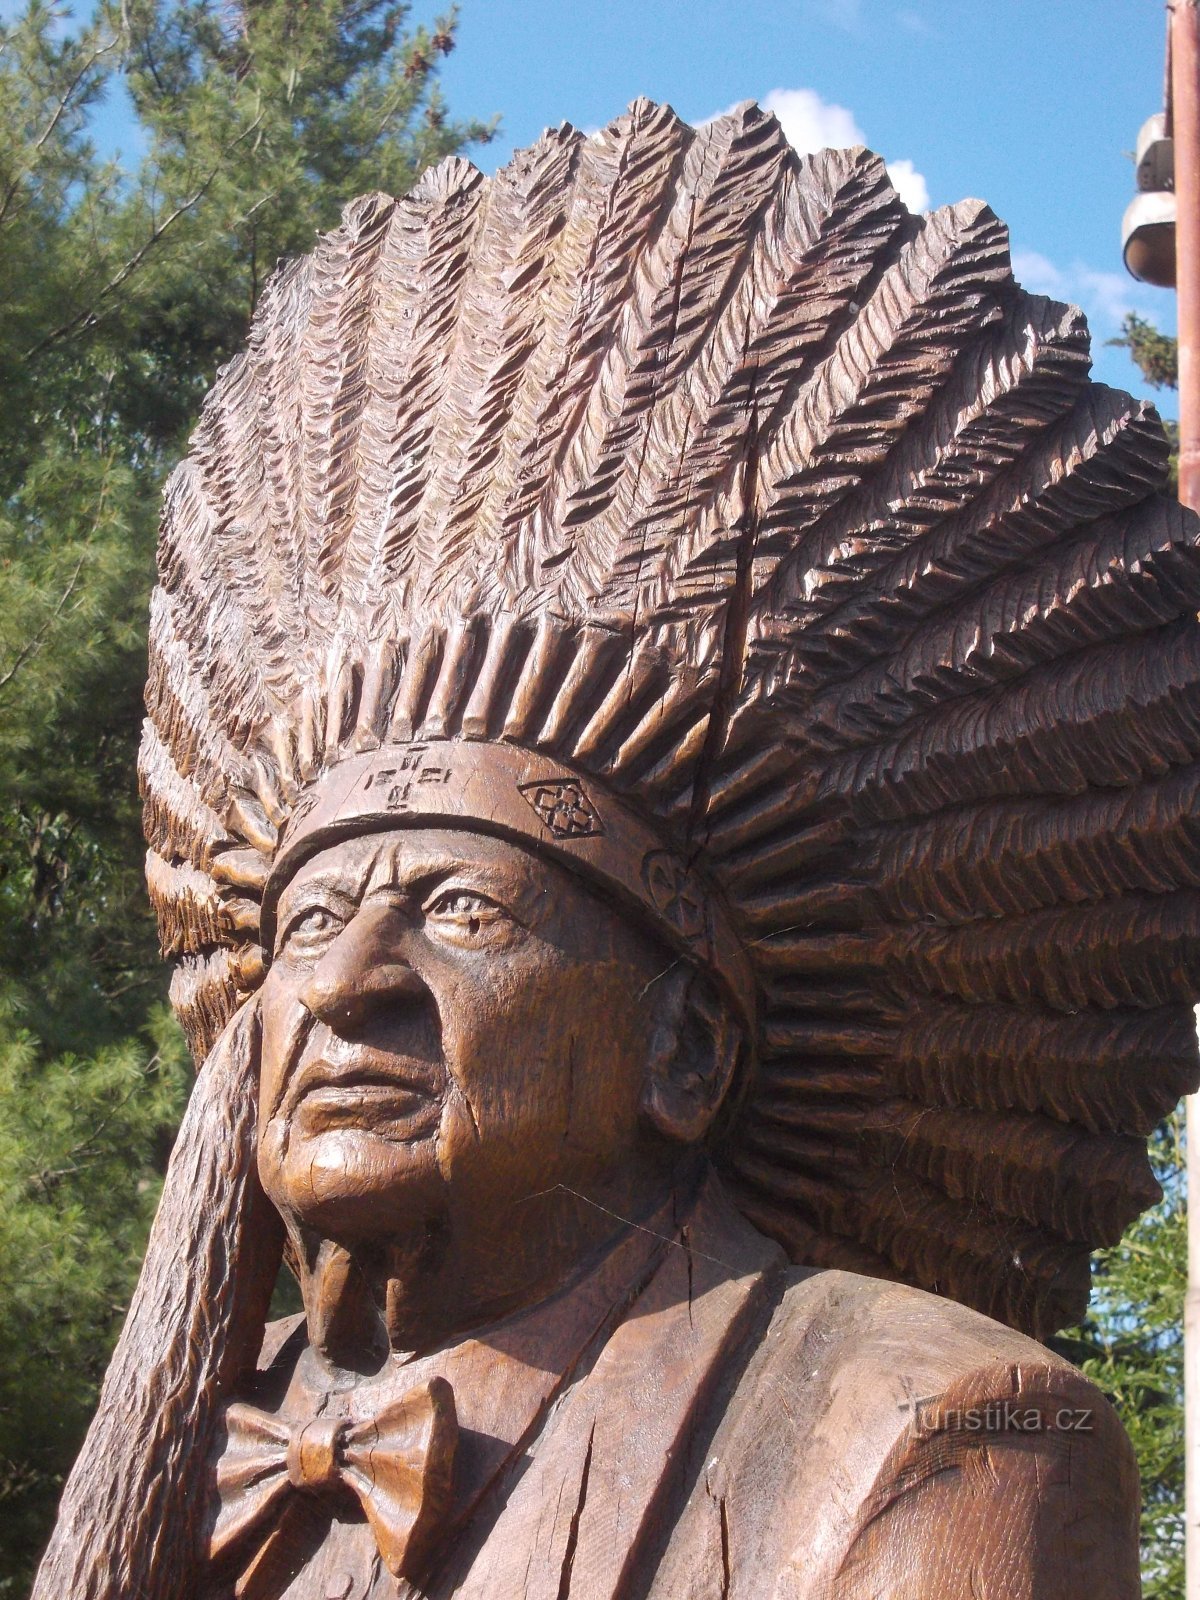 với chiếc mũ của thủ lĩnh danh dự của bộ lạc da đỏ Kickapoo